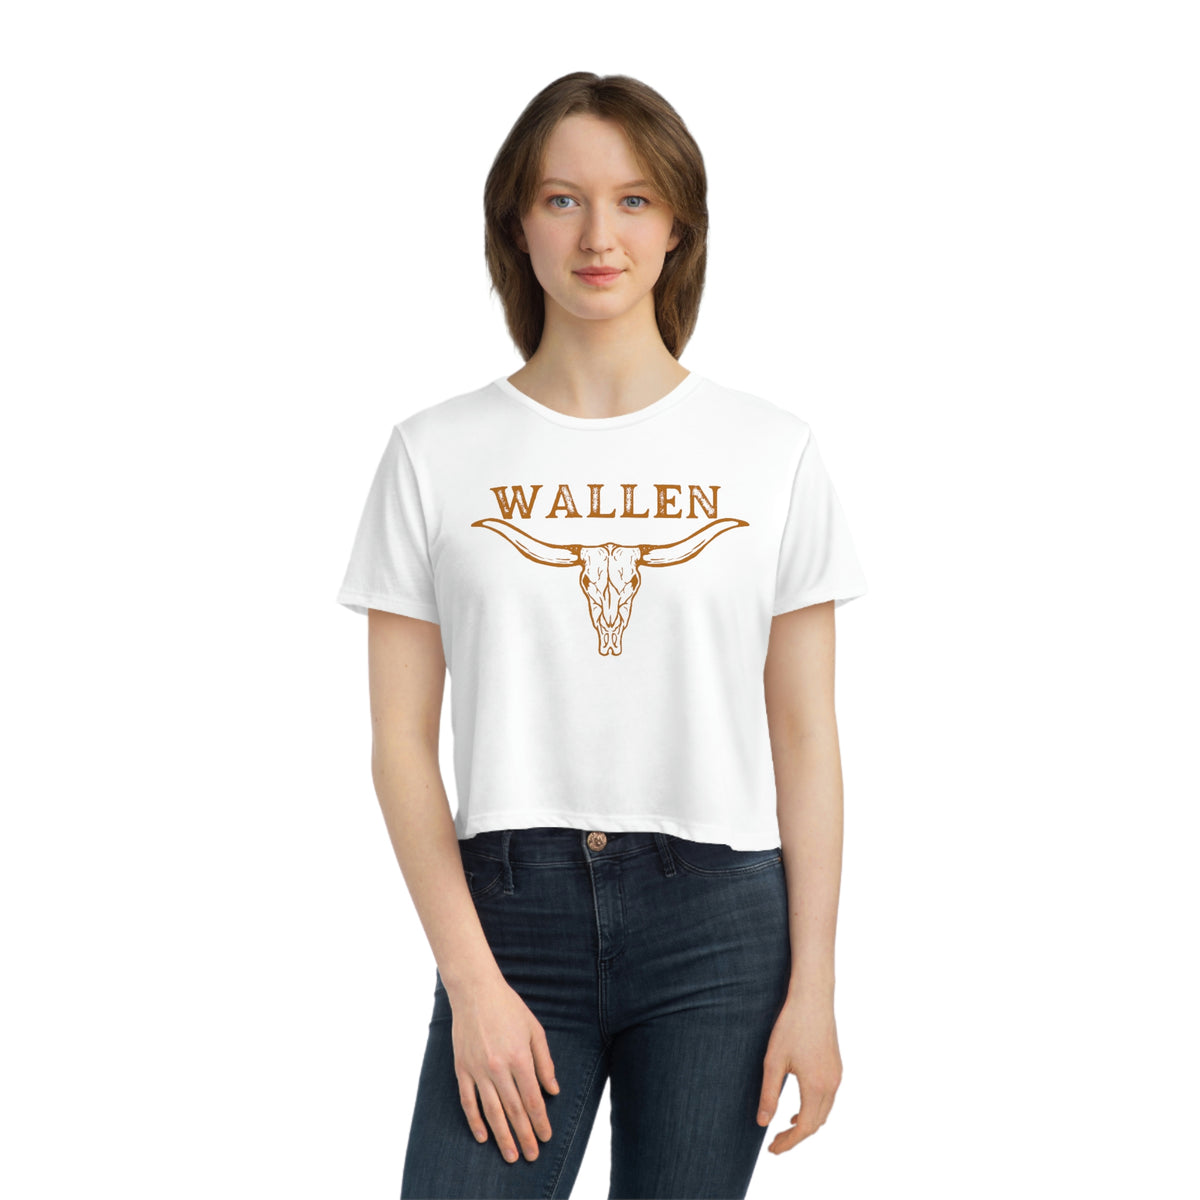 Morgan Wallen shirt, Morgan Wallen tshirt, Wallen crop top